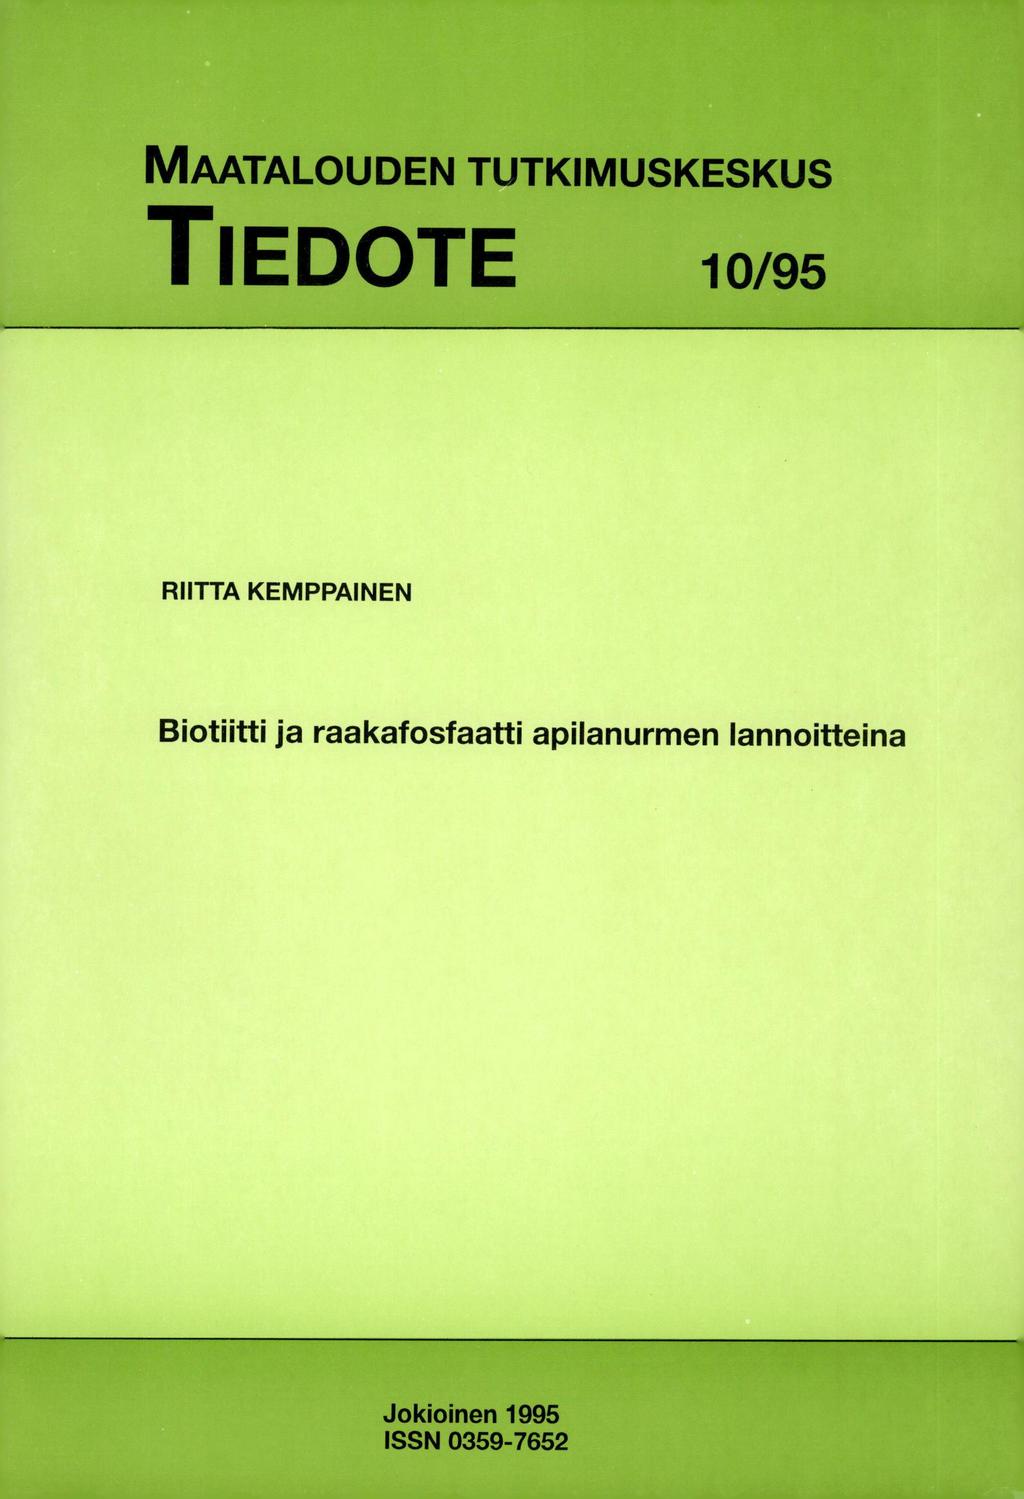 MAATALOUDEN TUTKIMUSKESKUS TIEDOTE 10/95 RIITTA KEMPPAINEN Biotiitti